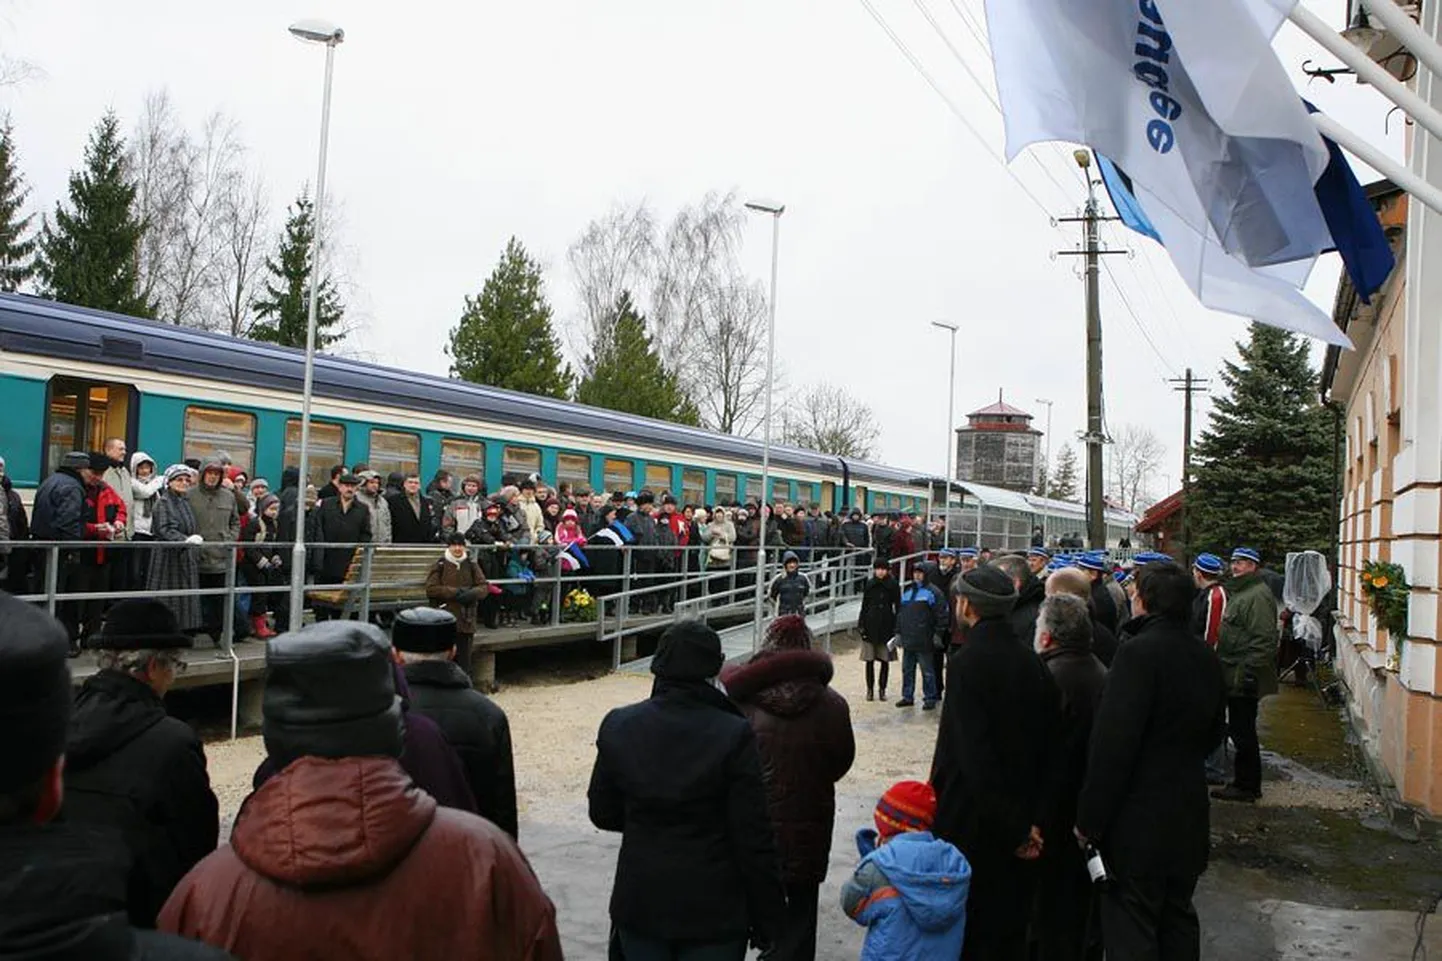 Viljandlastele oli eilne rongi saabumine tähtis sündmus, seda tõestas ka raudejaama tulnud rahvahulk.